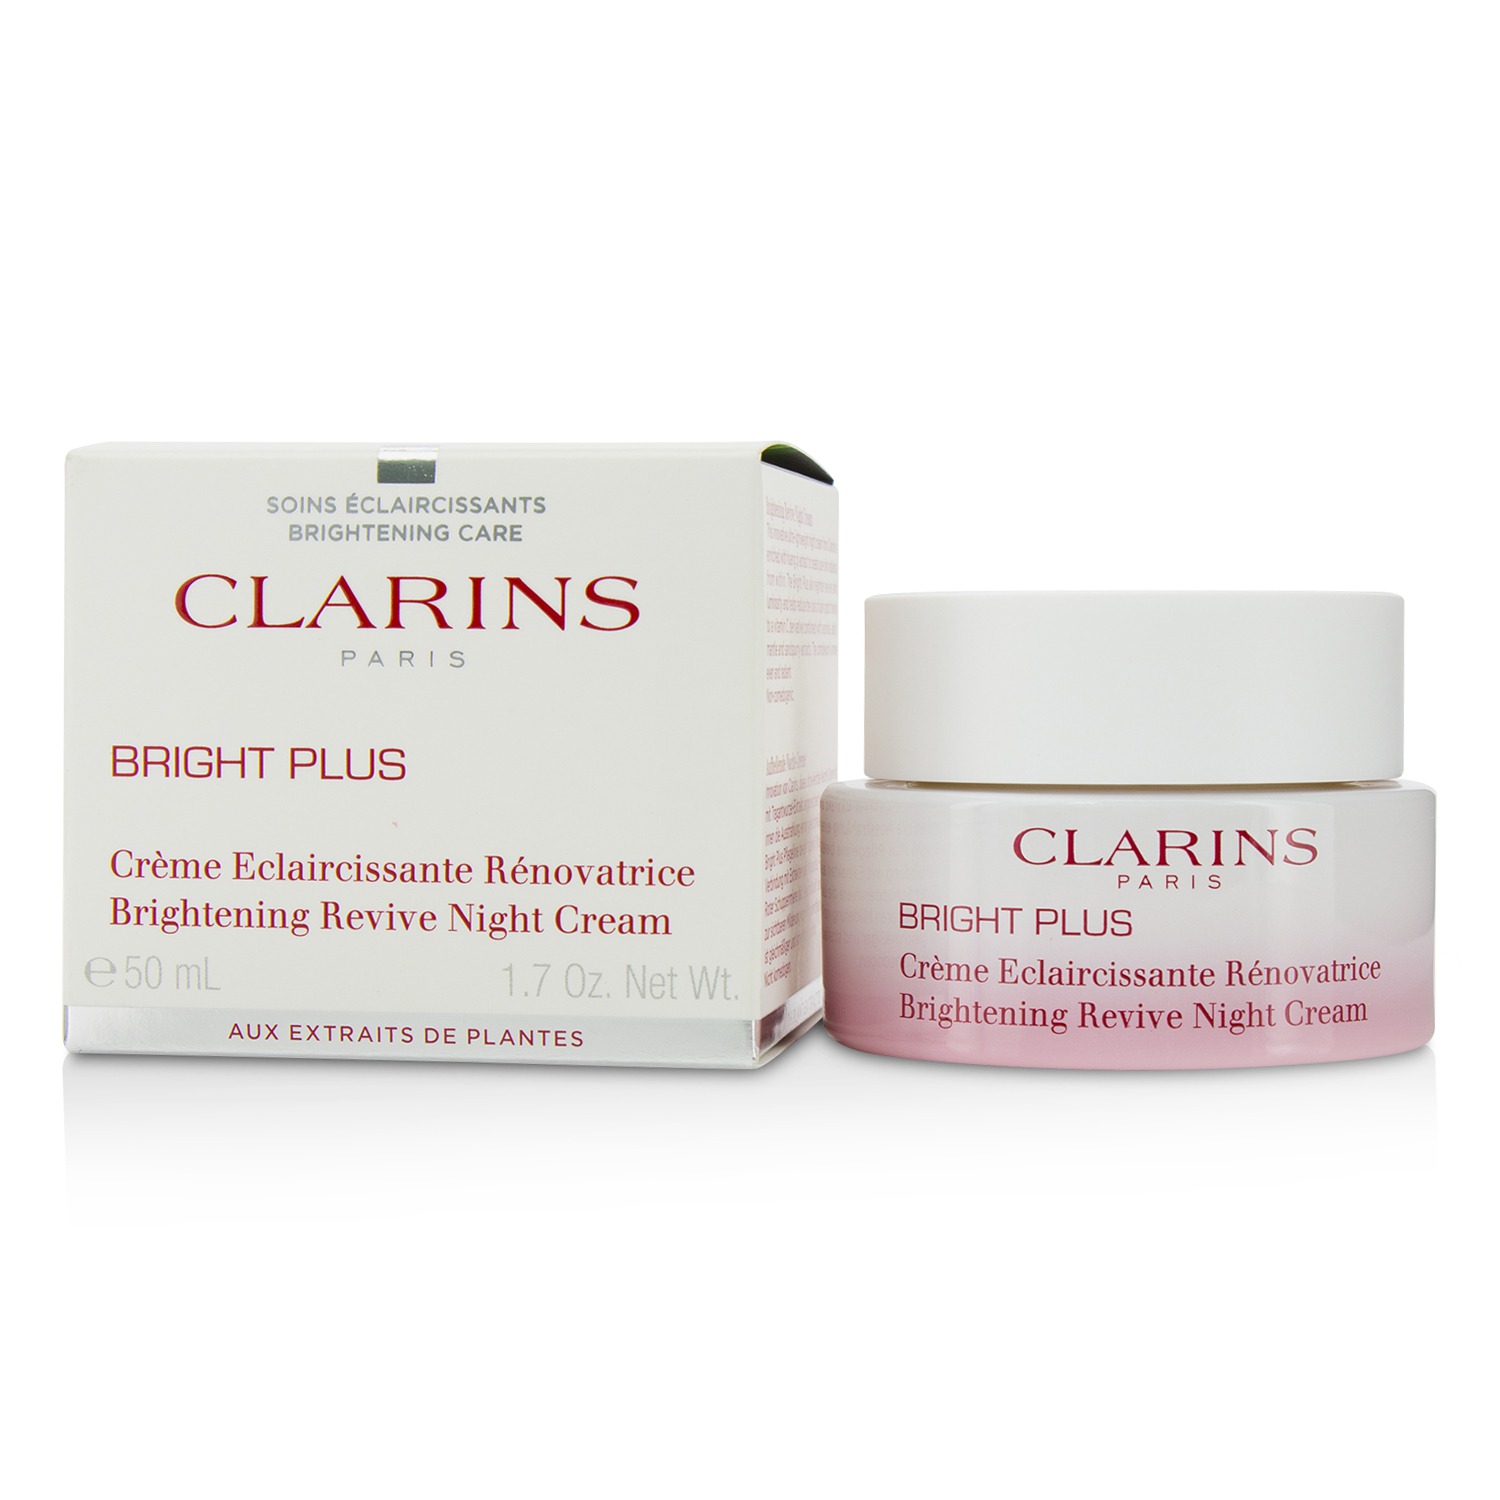 Bright Plus Brightening Revive Night Cream Clarins Image